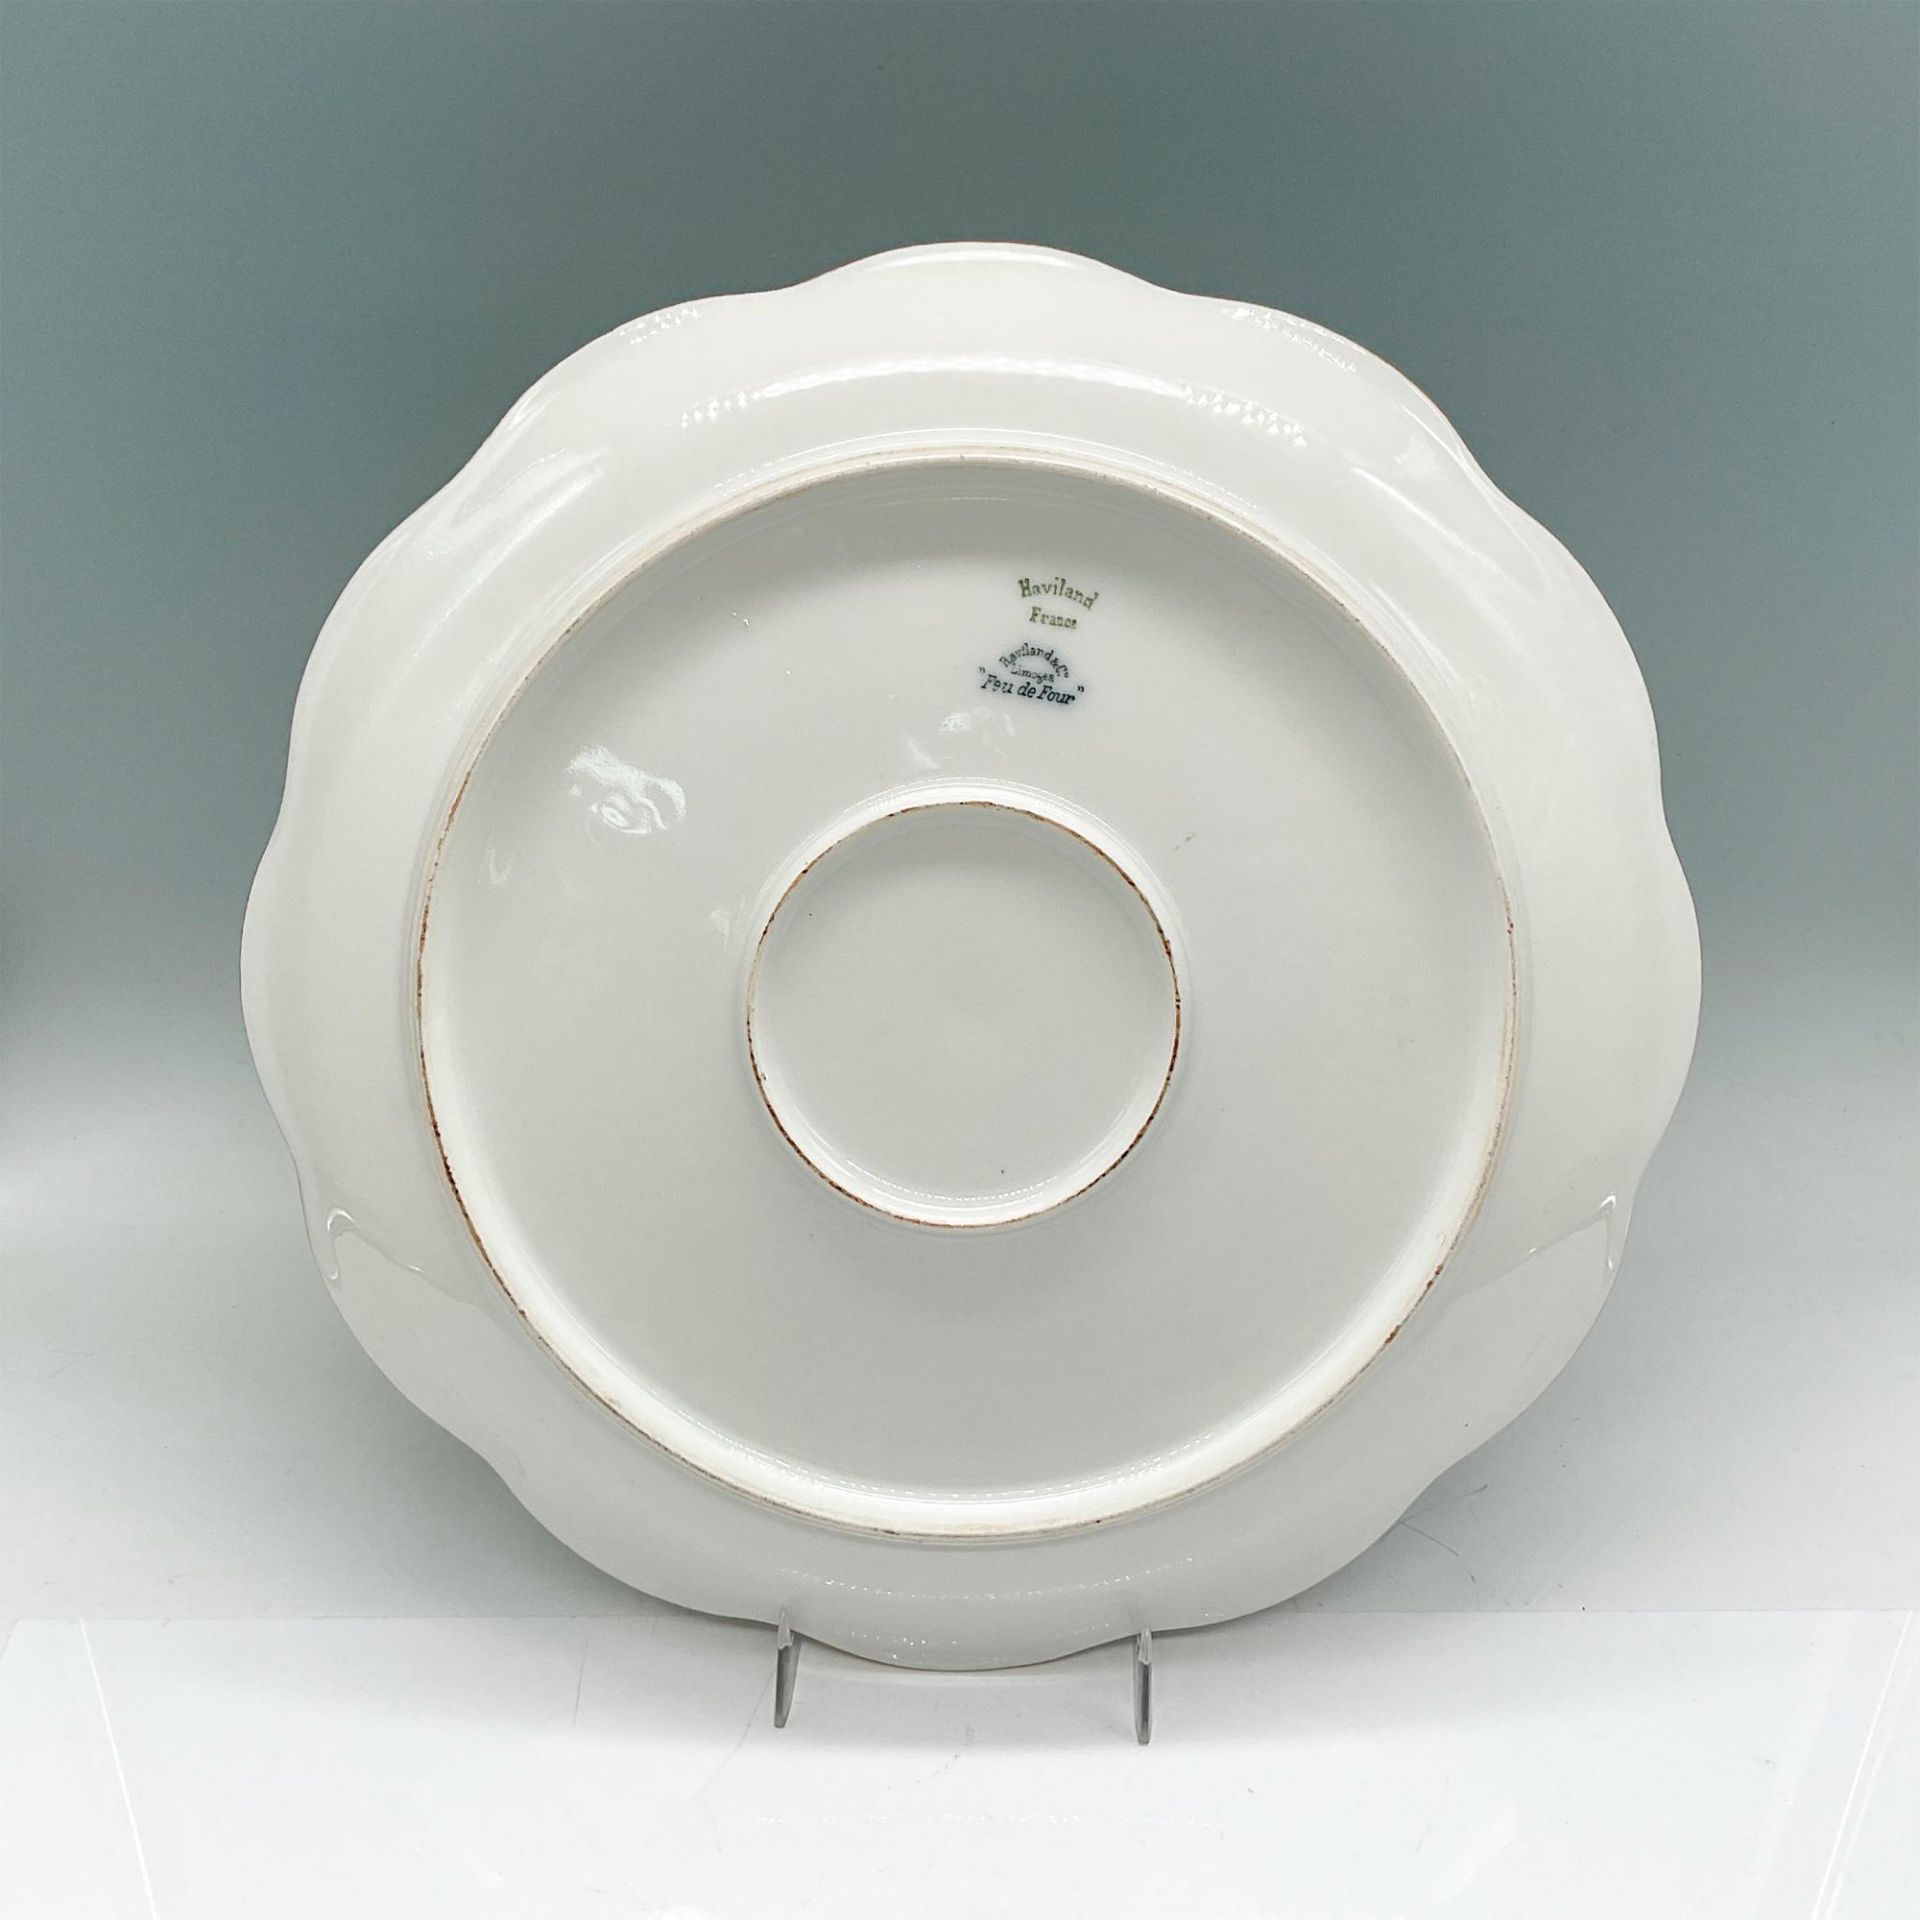 2pc Haviland & Co. Decorative Limoges Plates, Dandelions - Image 3 of 6